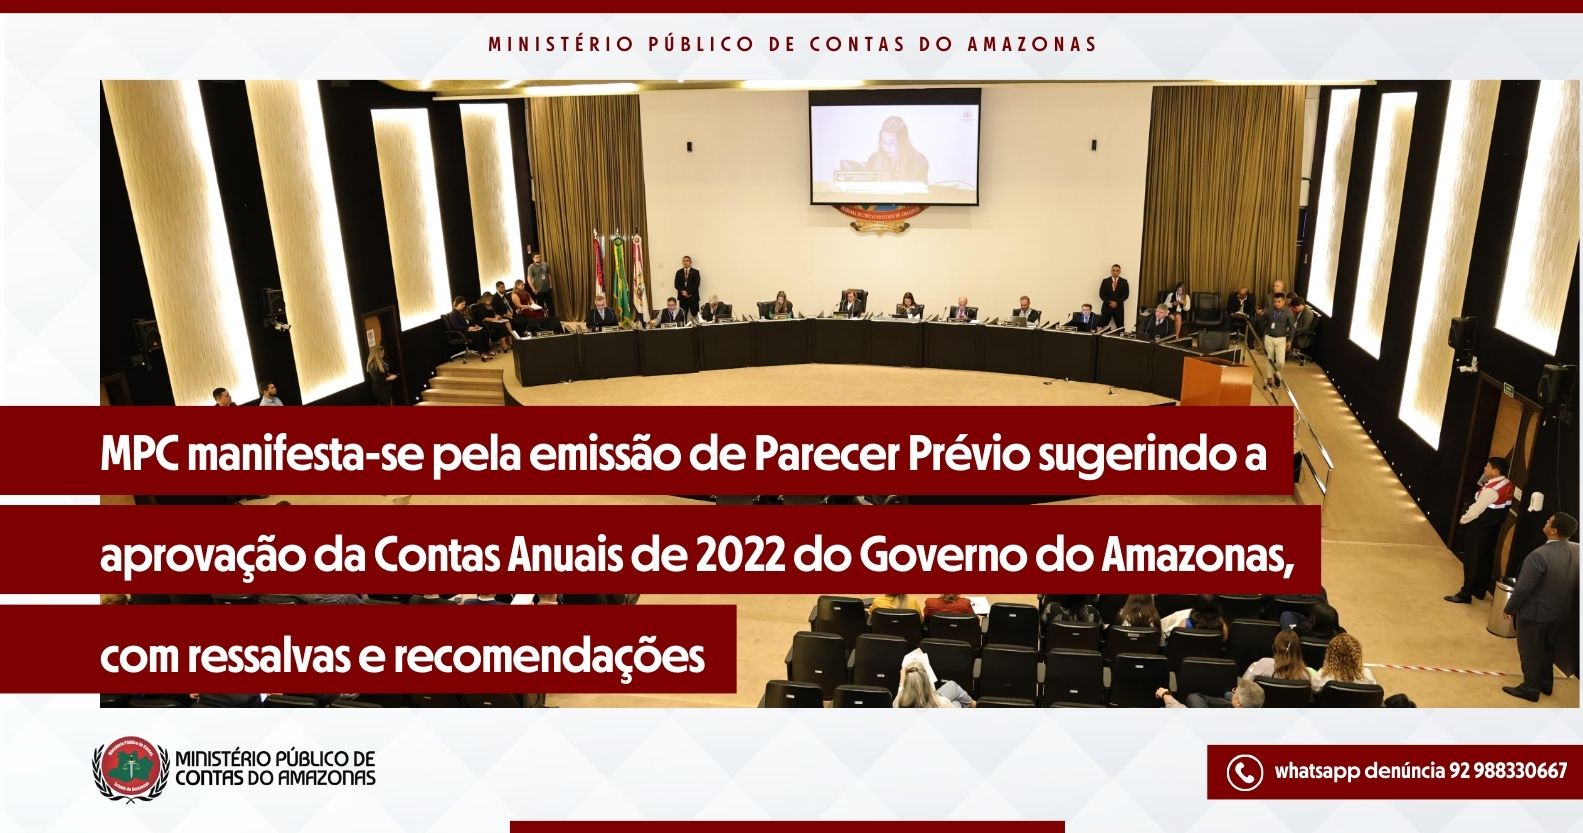 MPC manifesta-se pela emissão de Parecer Prévio sugerindo a aprovação da Contas Anuais de 2022 do Governo do Amazonas, com ressalvas e recomendações